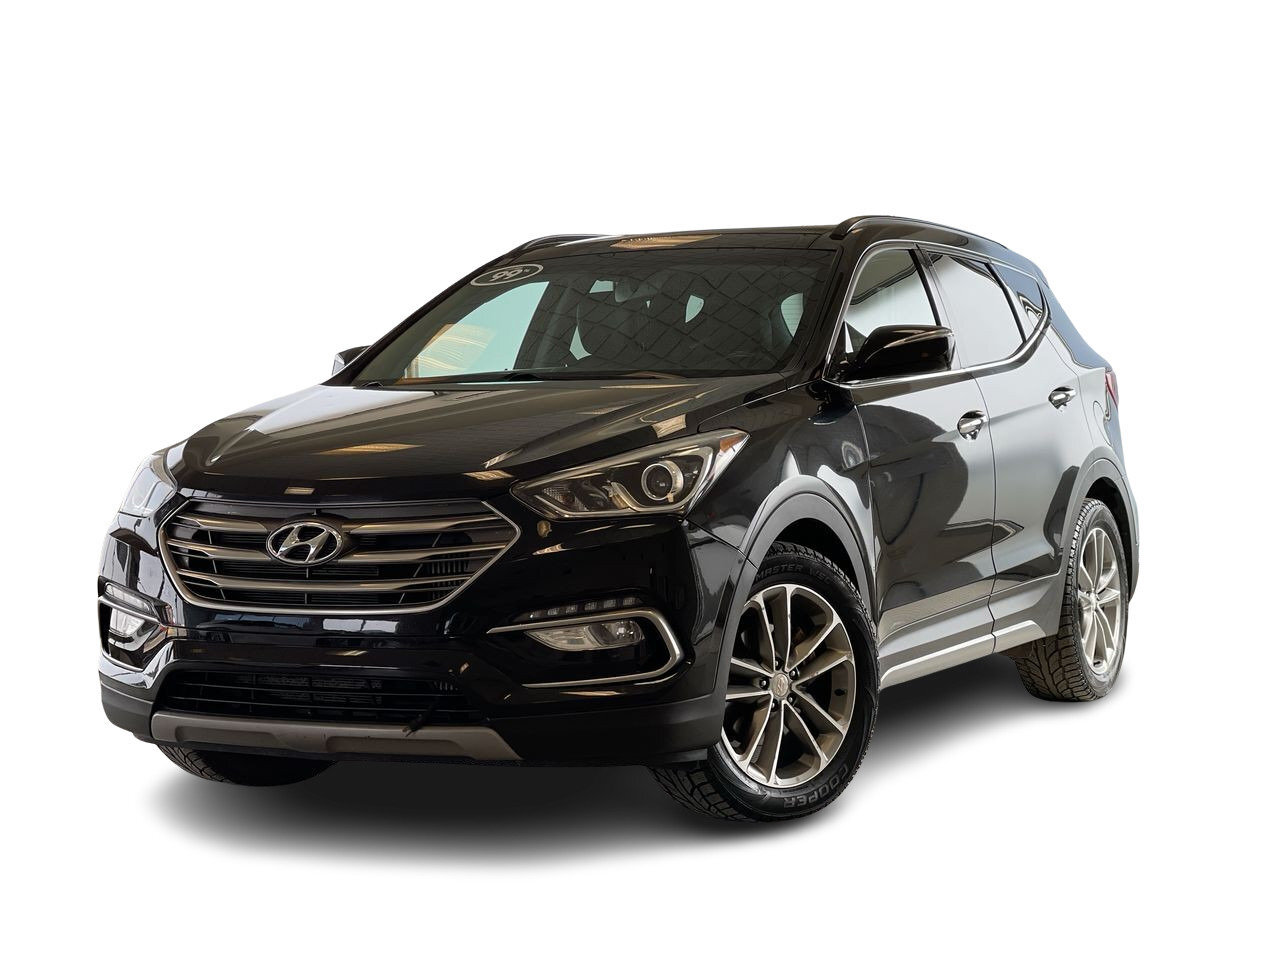 2017 Hyundai Santa Fe Sport Limited - Local Trade AWD, Leather, Bluetooth, Bac